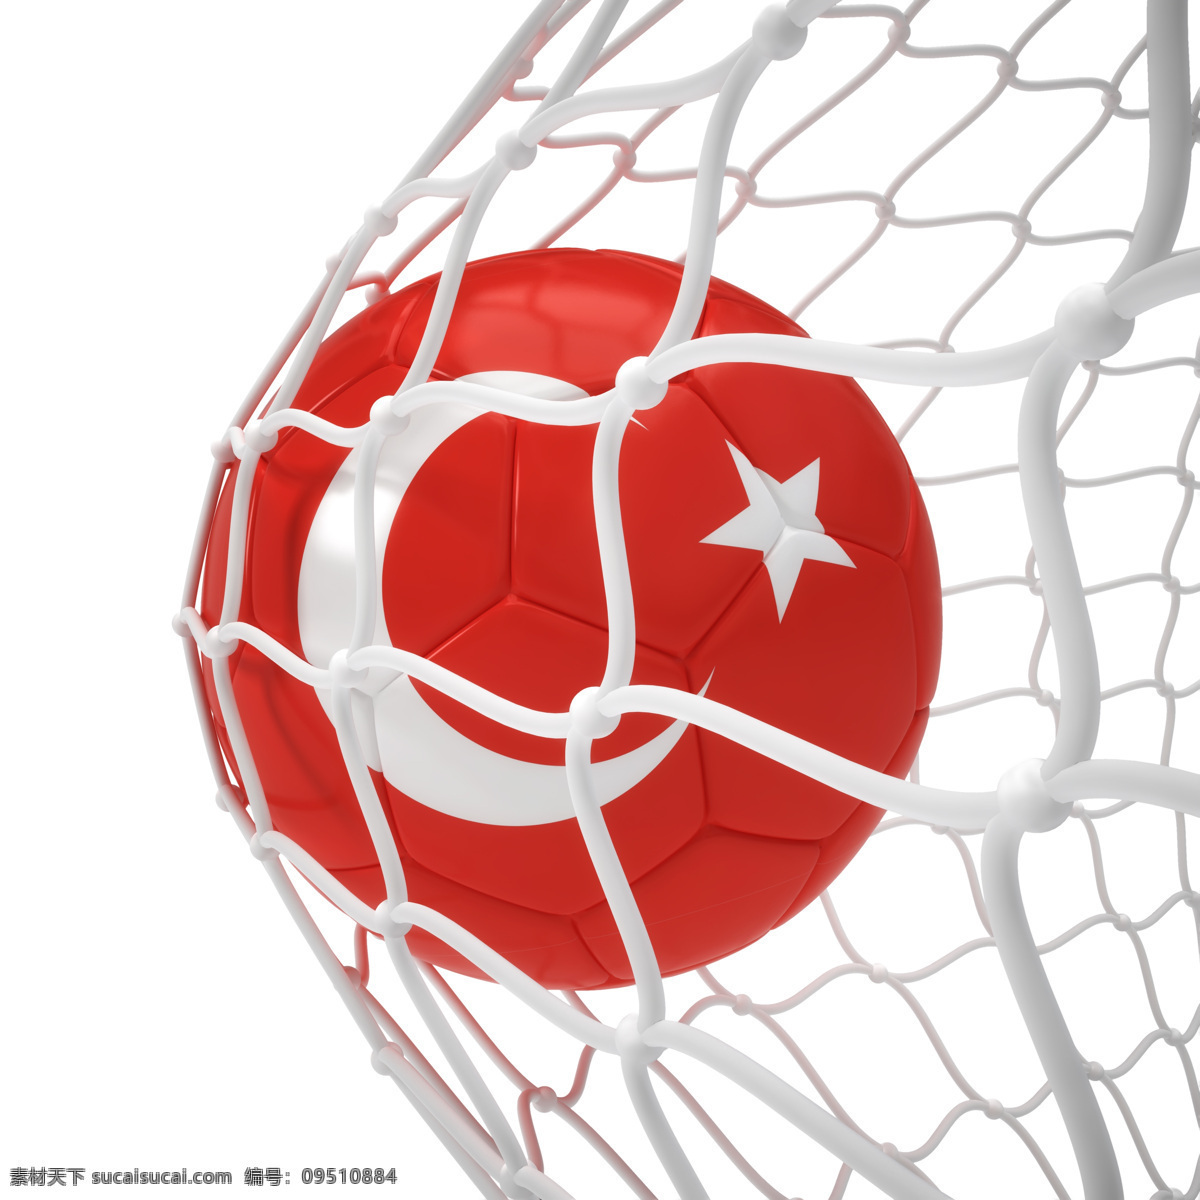 土耳其 国旗 足球 土耳其足球 进球 球门 足球比赛 赛事 足球运动 体育运动 体育项目 生活百科